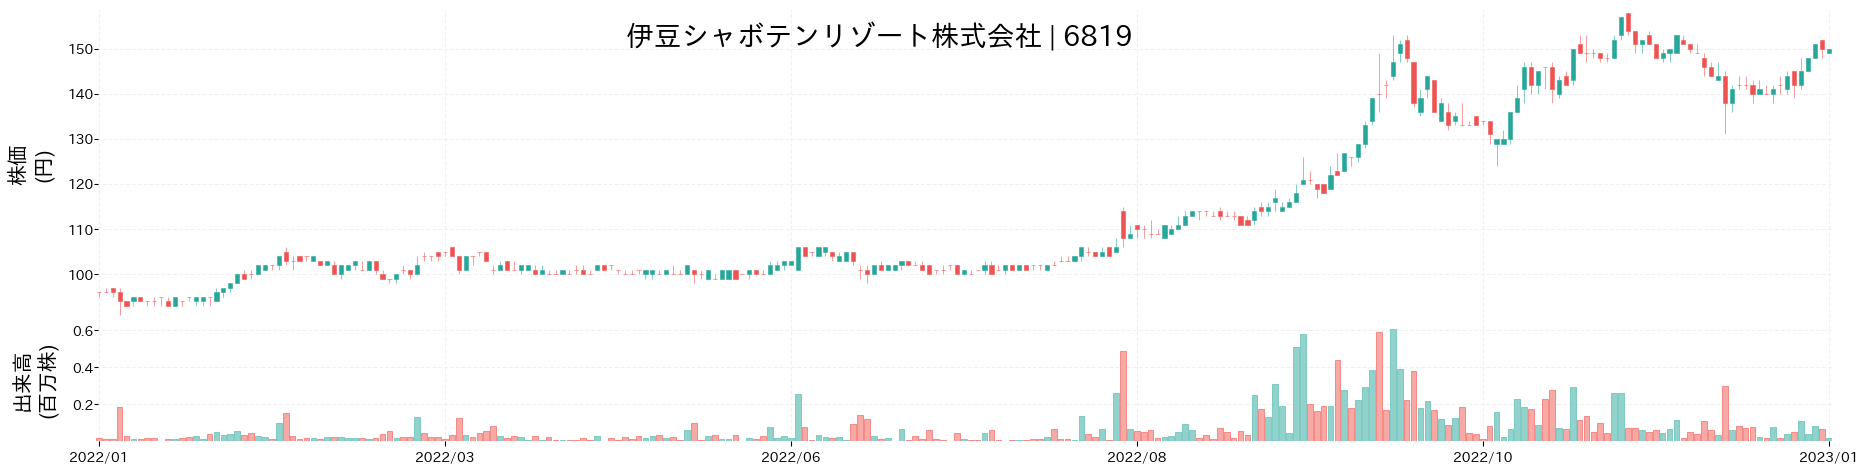 伊豆シャボテンリゾートの株価推移(2022)